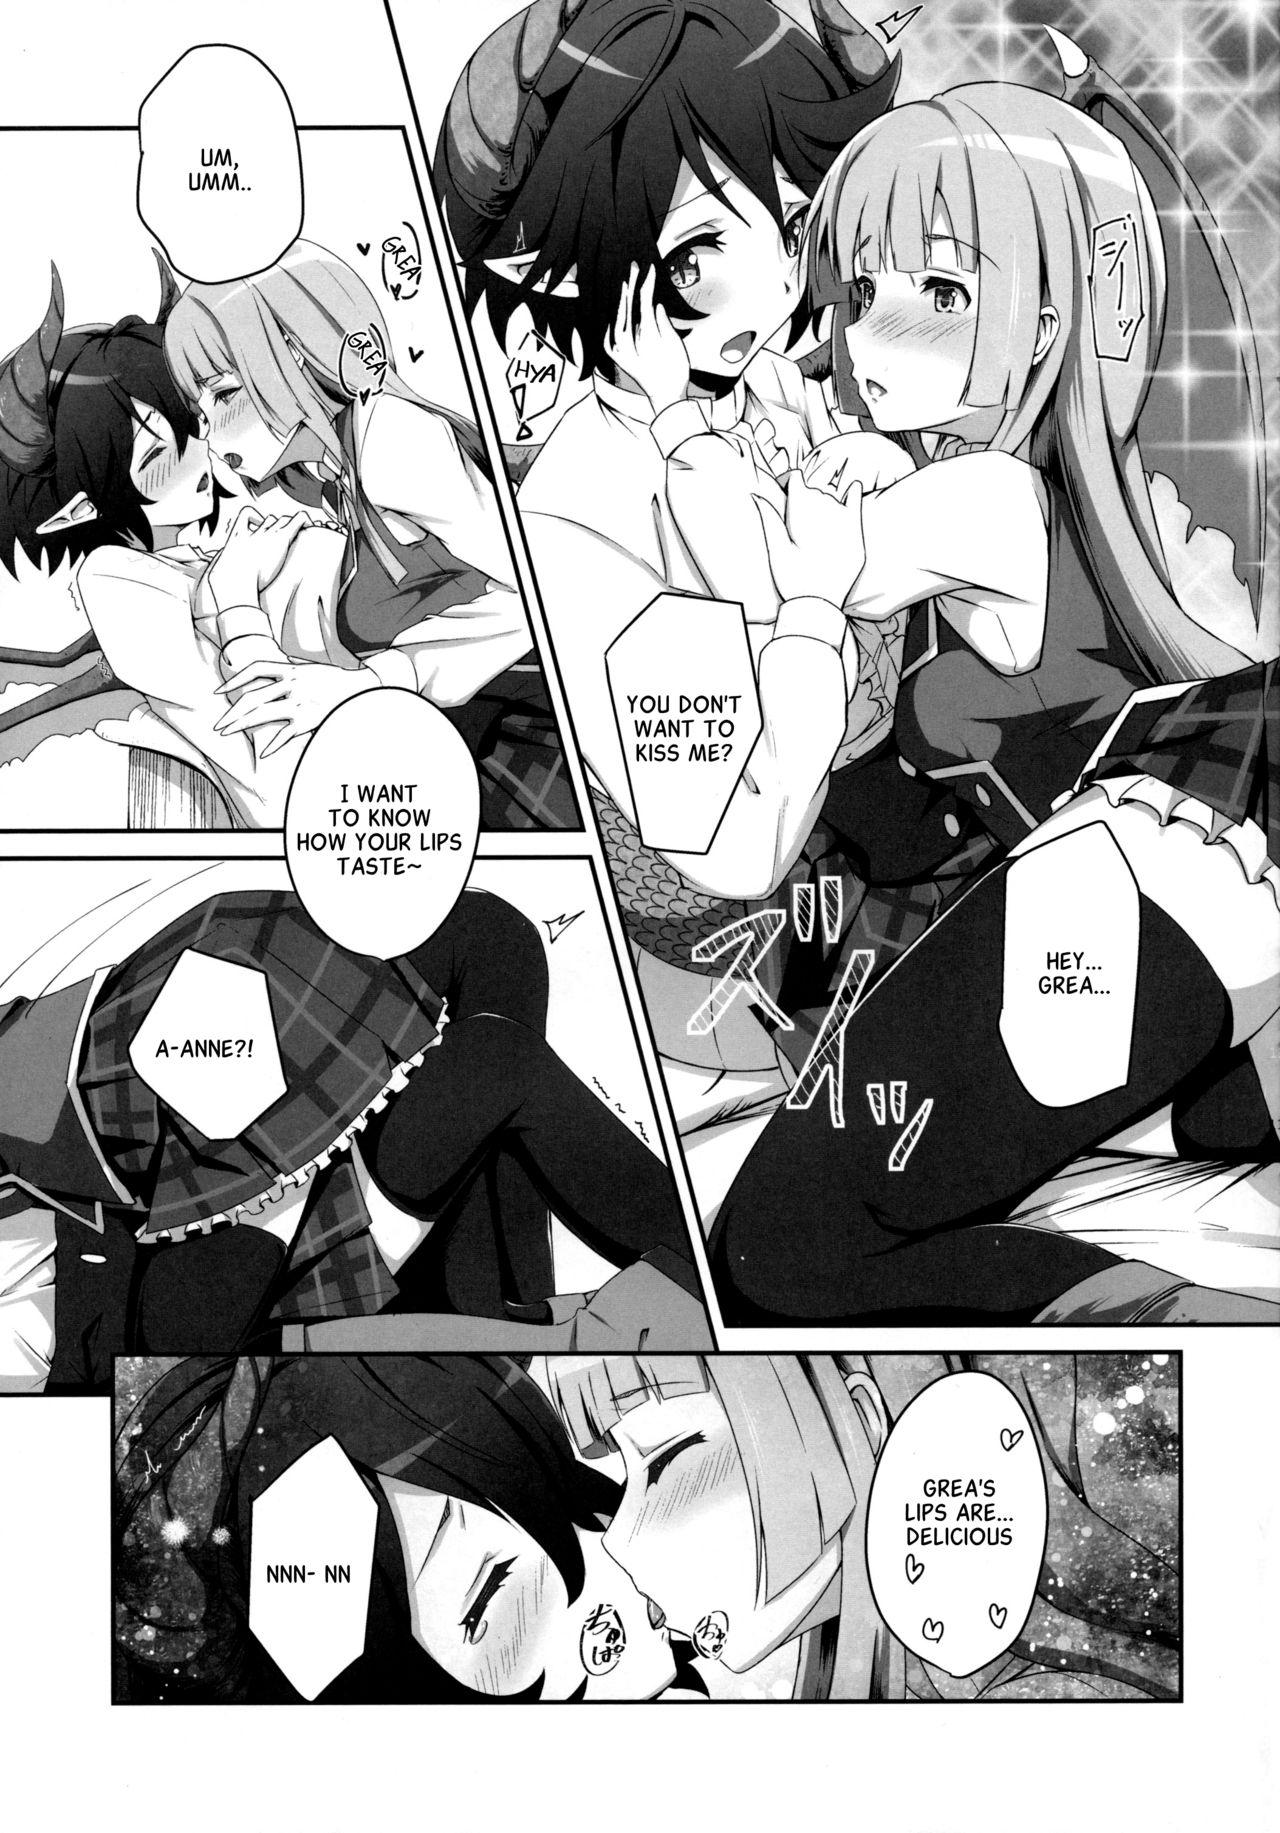 Cheat Kono Koto wa Futari dake no Himitsu dakara ne - Manaria friends Teen Sex - Page 10